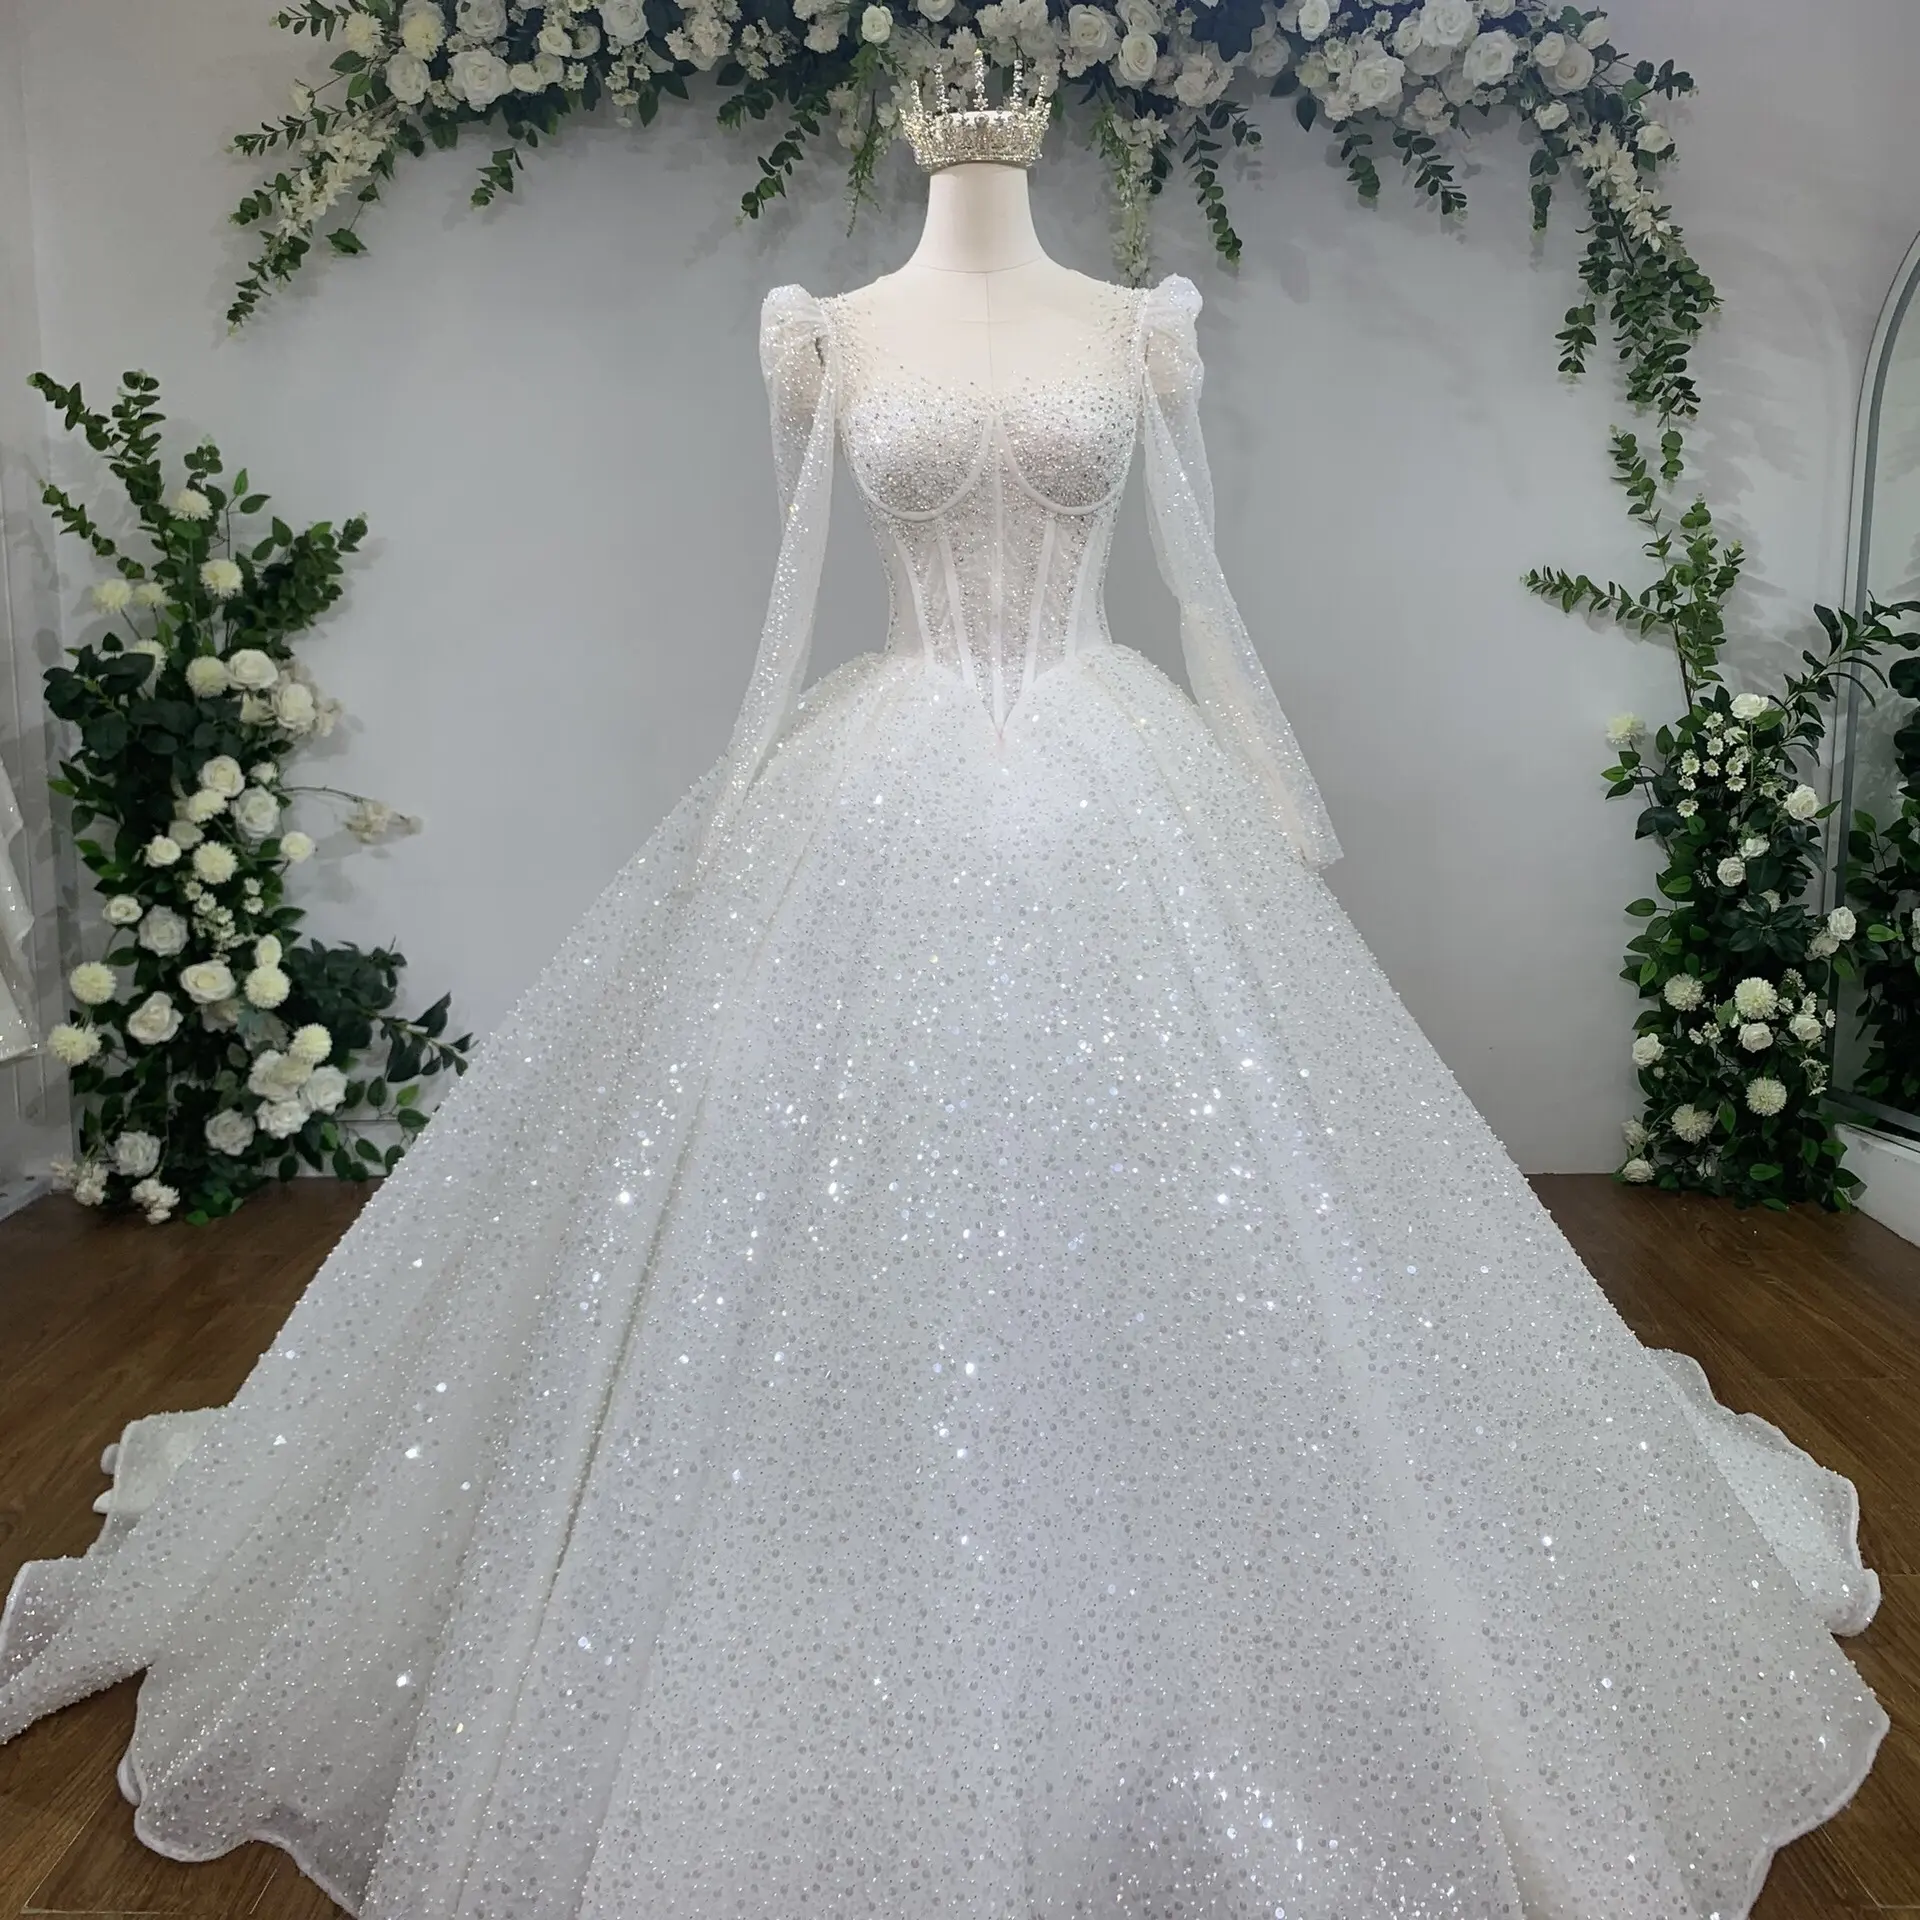 Produsen OEM gaun pernikahan berkualitas tinggi grosir gaun pesta desain bunga renda ekor panjang menambahkan manik-manik oleh buatan tangan TNBPno31